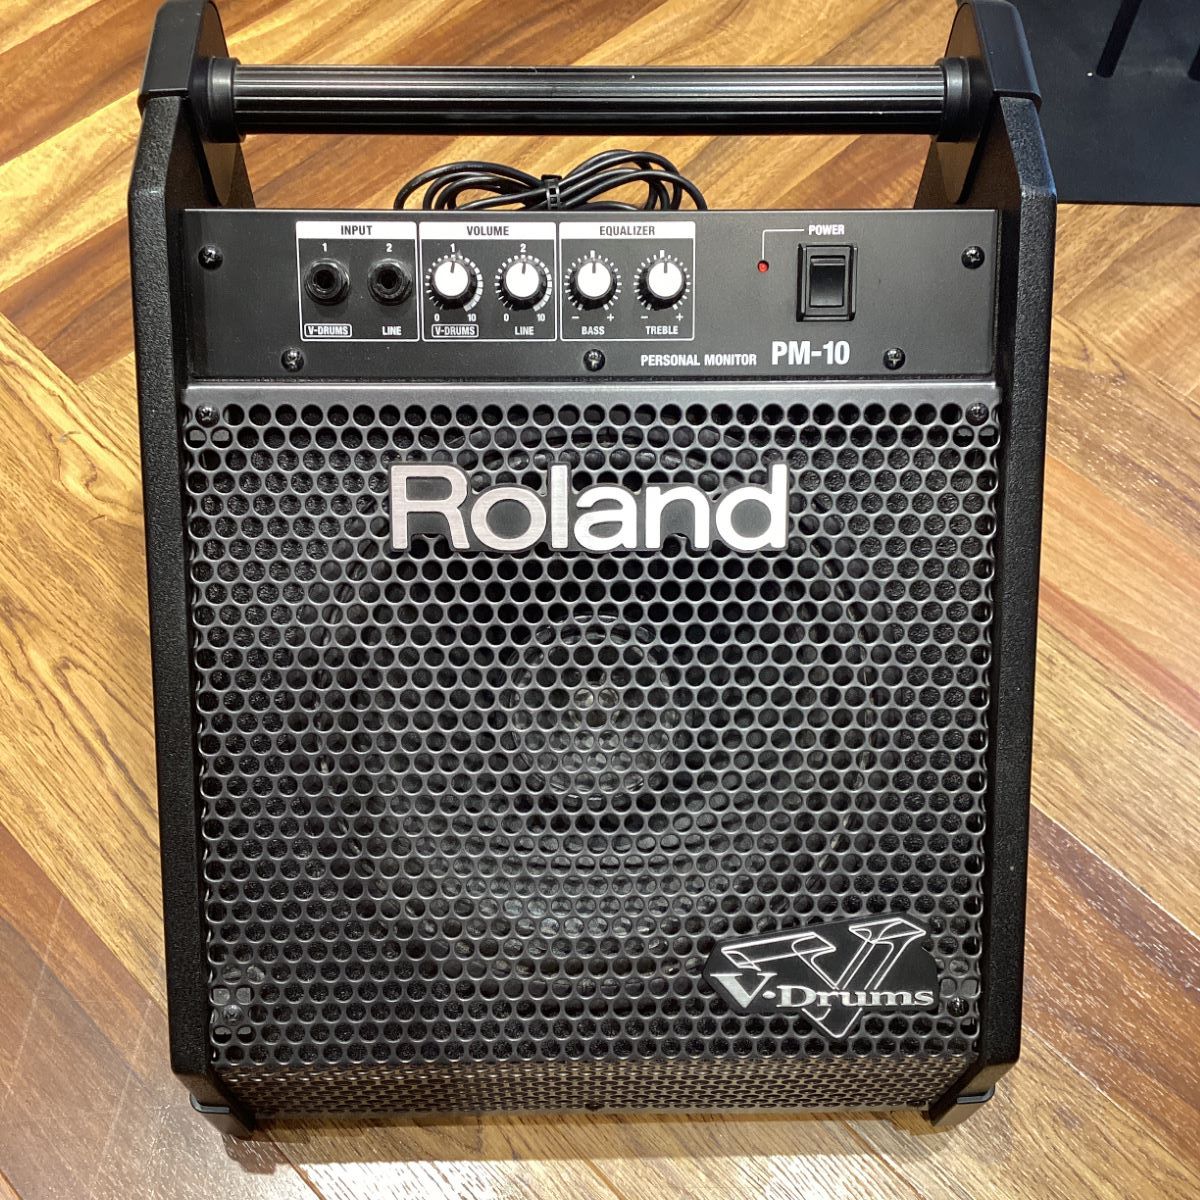 楽器・音響機器 Roland 電子ドラム用モニタースピーカー PM-100 接続ケーブルセット